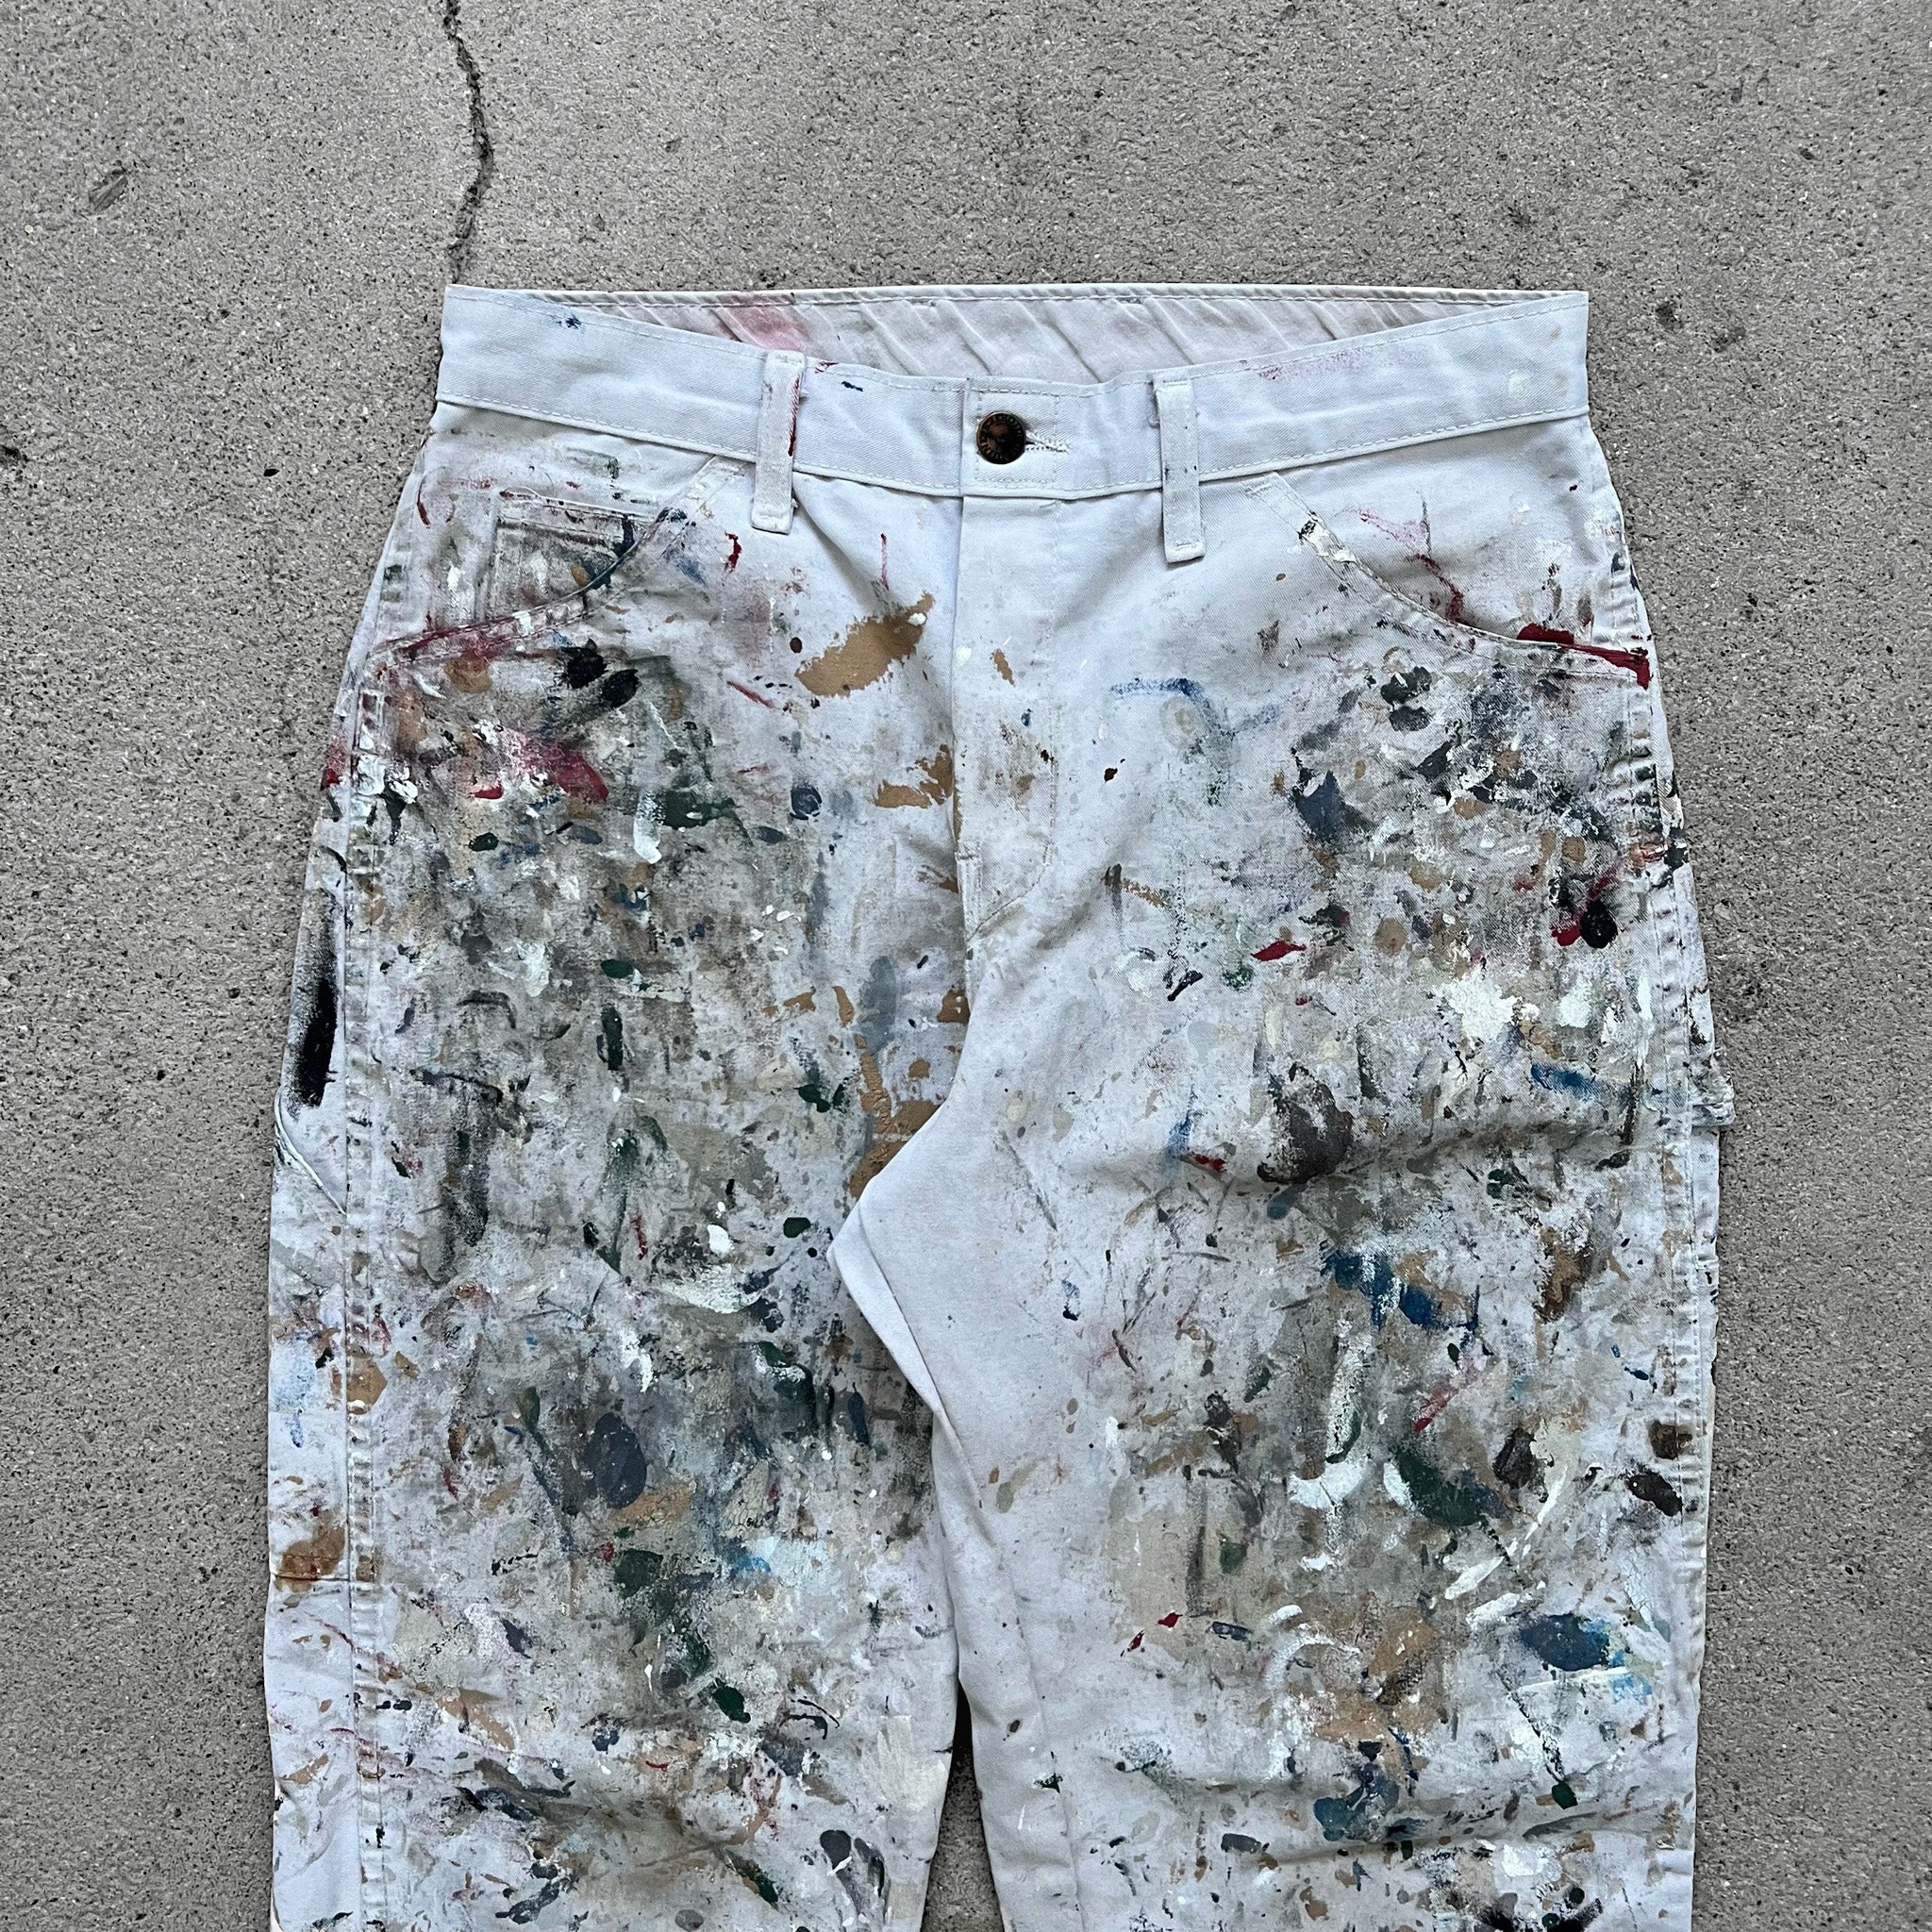 Dickies [Dickies] Vintage Painted Painter Pants [1980s-] Vintage